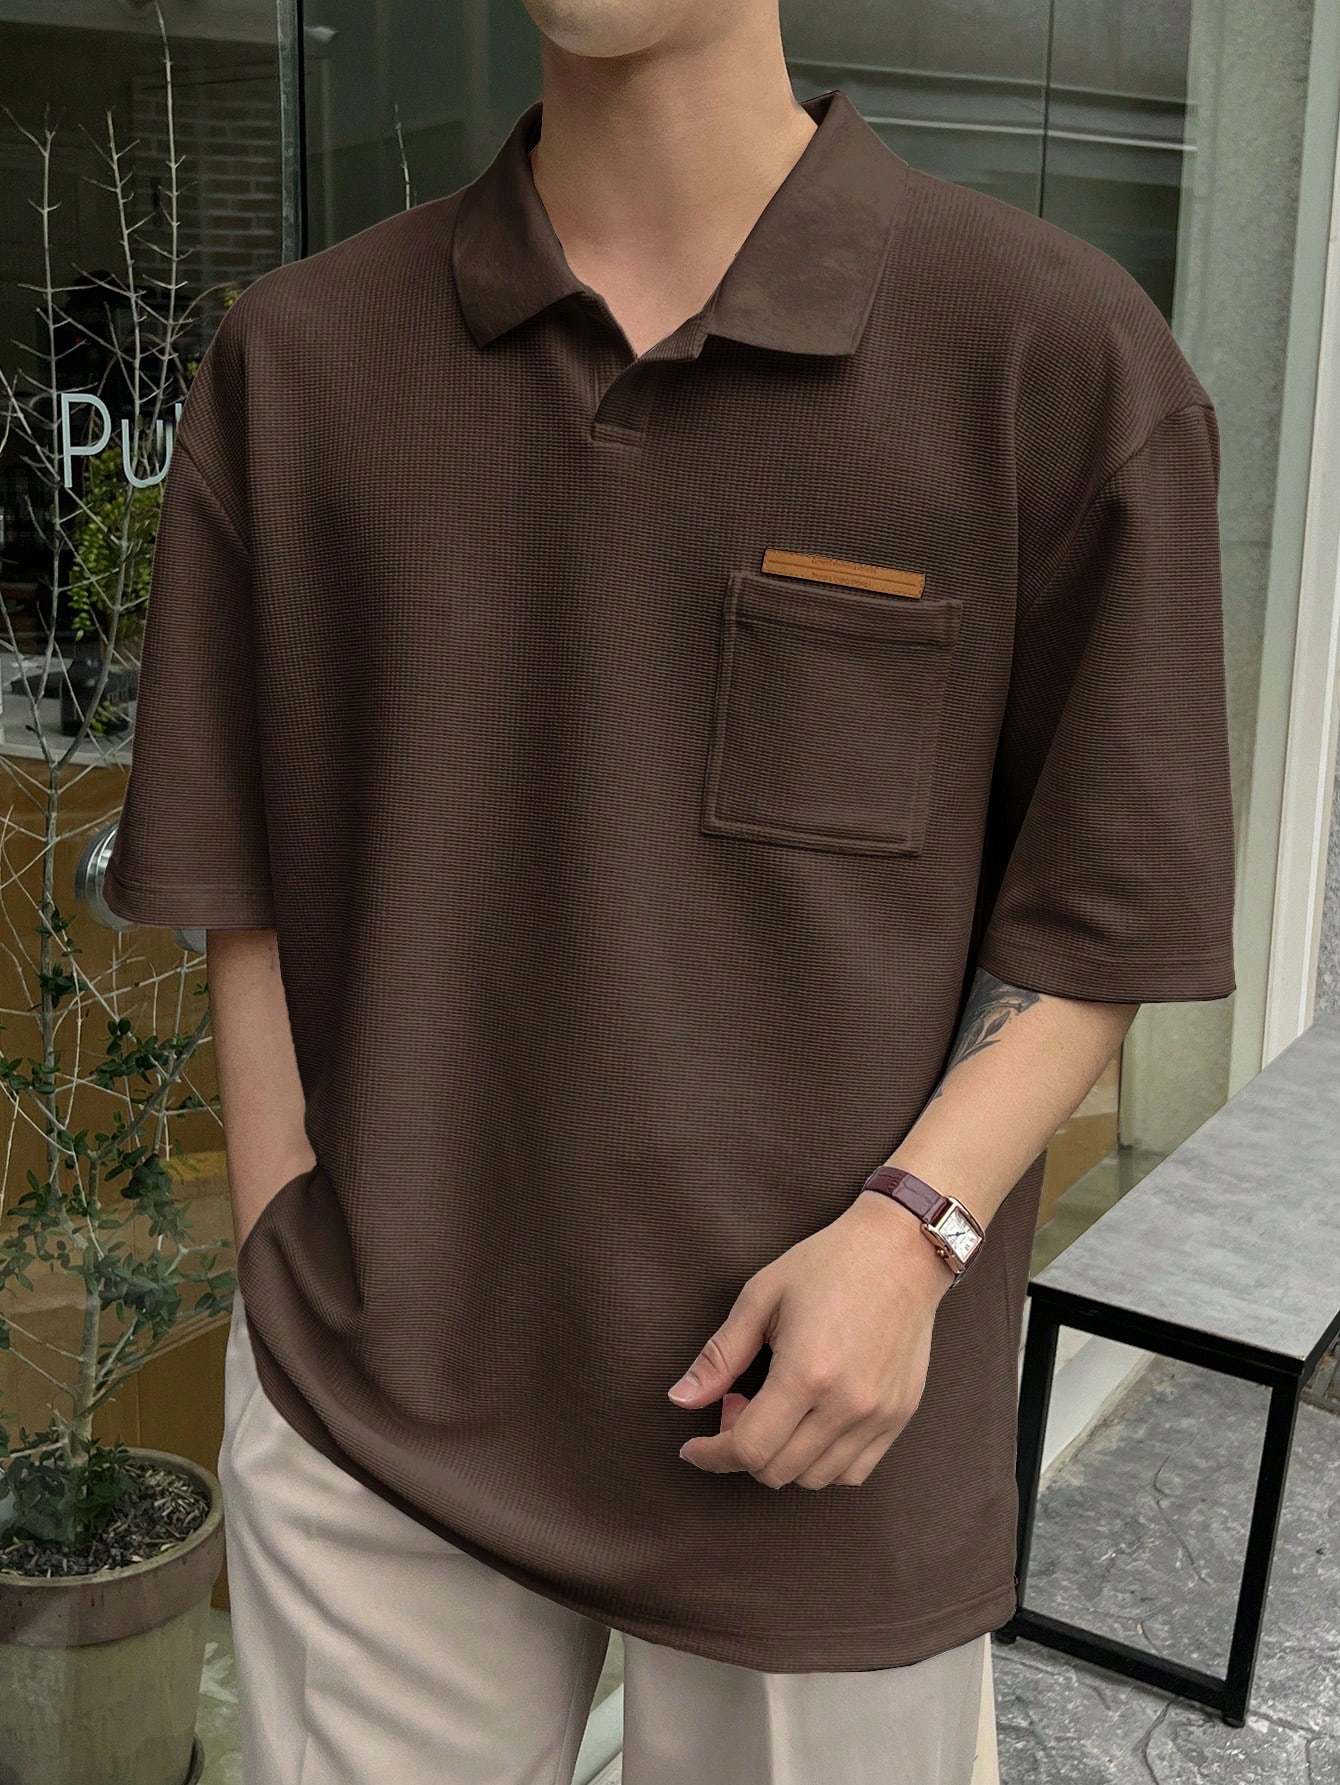 DAZY Мужская текстурированная рубашка-поло с короткими рукавами и карманом, кофейный коричневый рубашка поло с короткими рукавами – мужская smartwool цвет almond heather